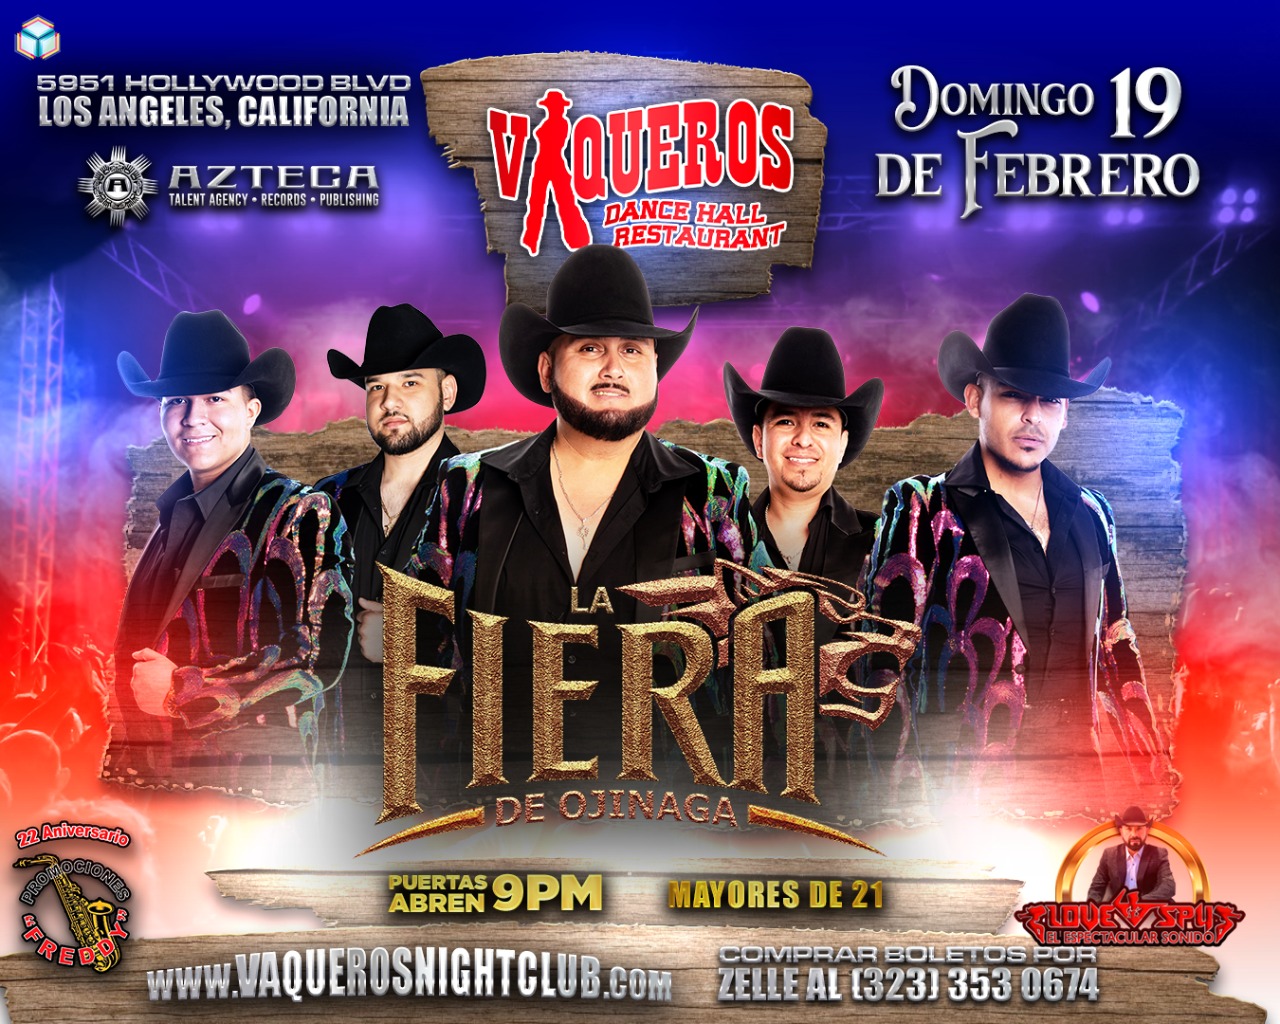 Buy Tickets to La Fiera De Ojinaga in Los Angeles on Feb 19, 2023